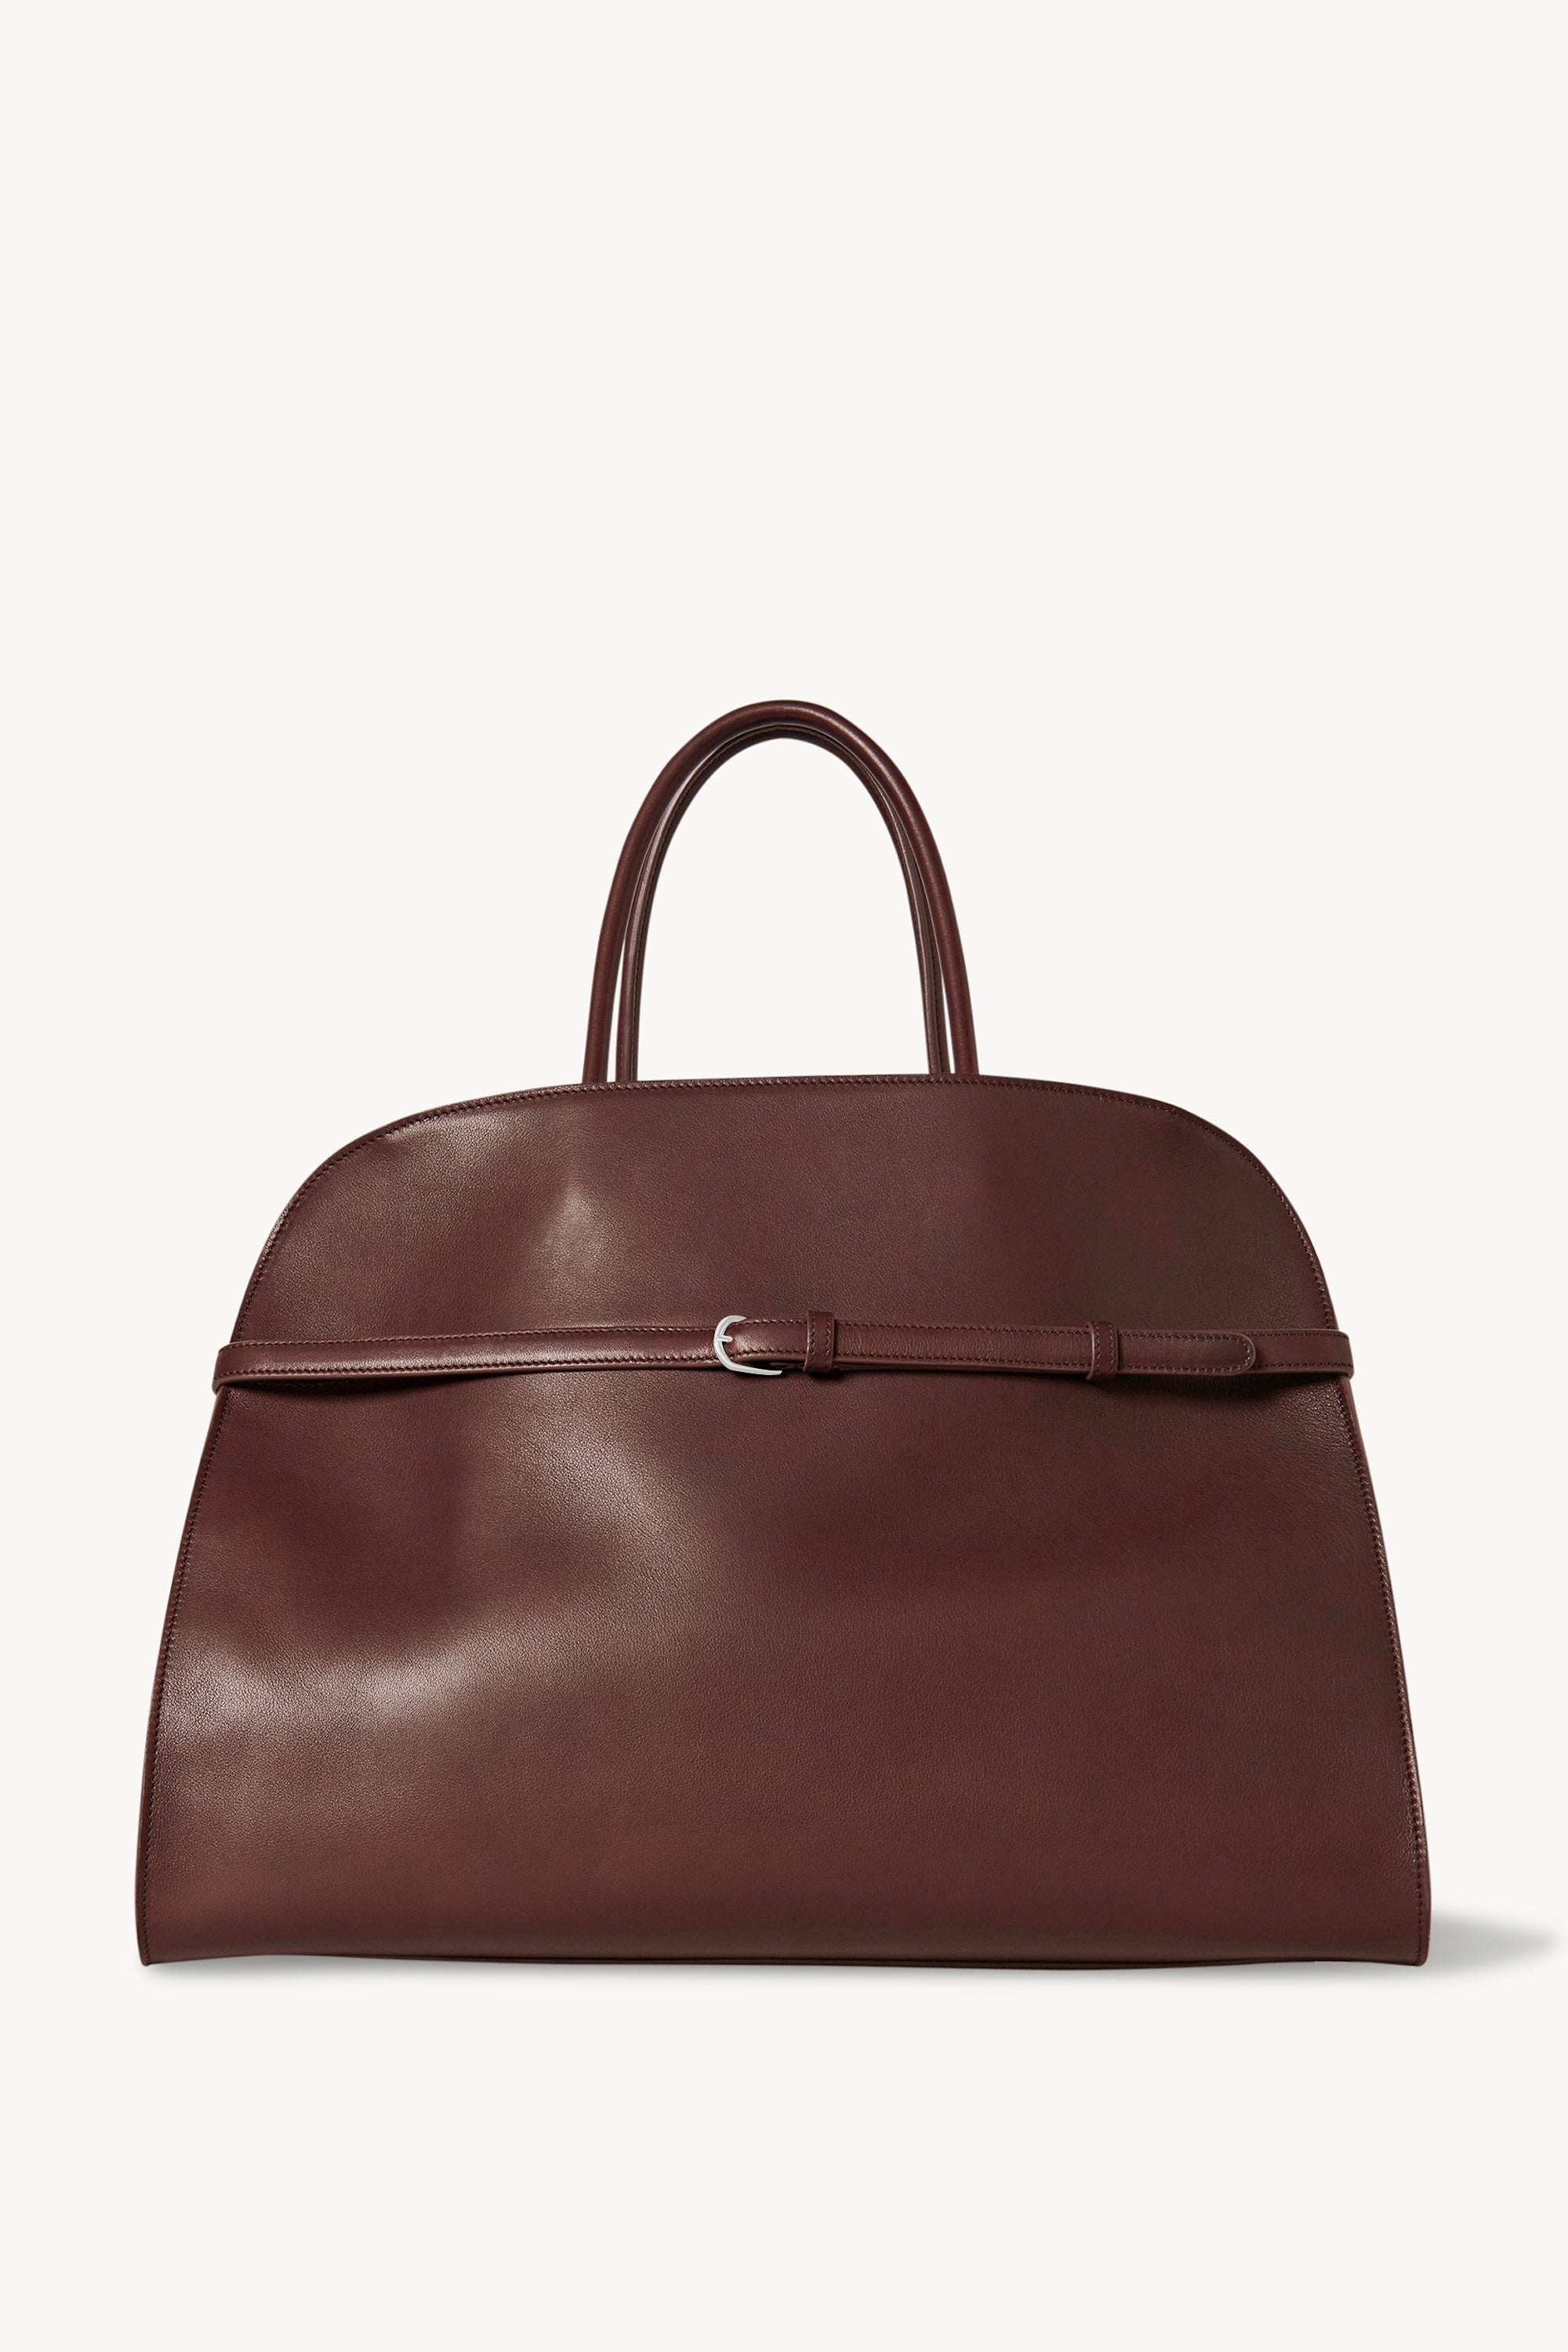 Margaux Belt 17 Bag in Leather - 1